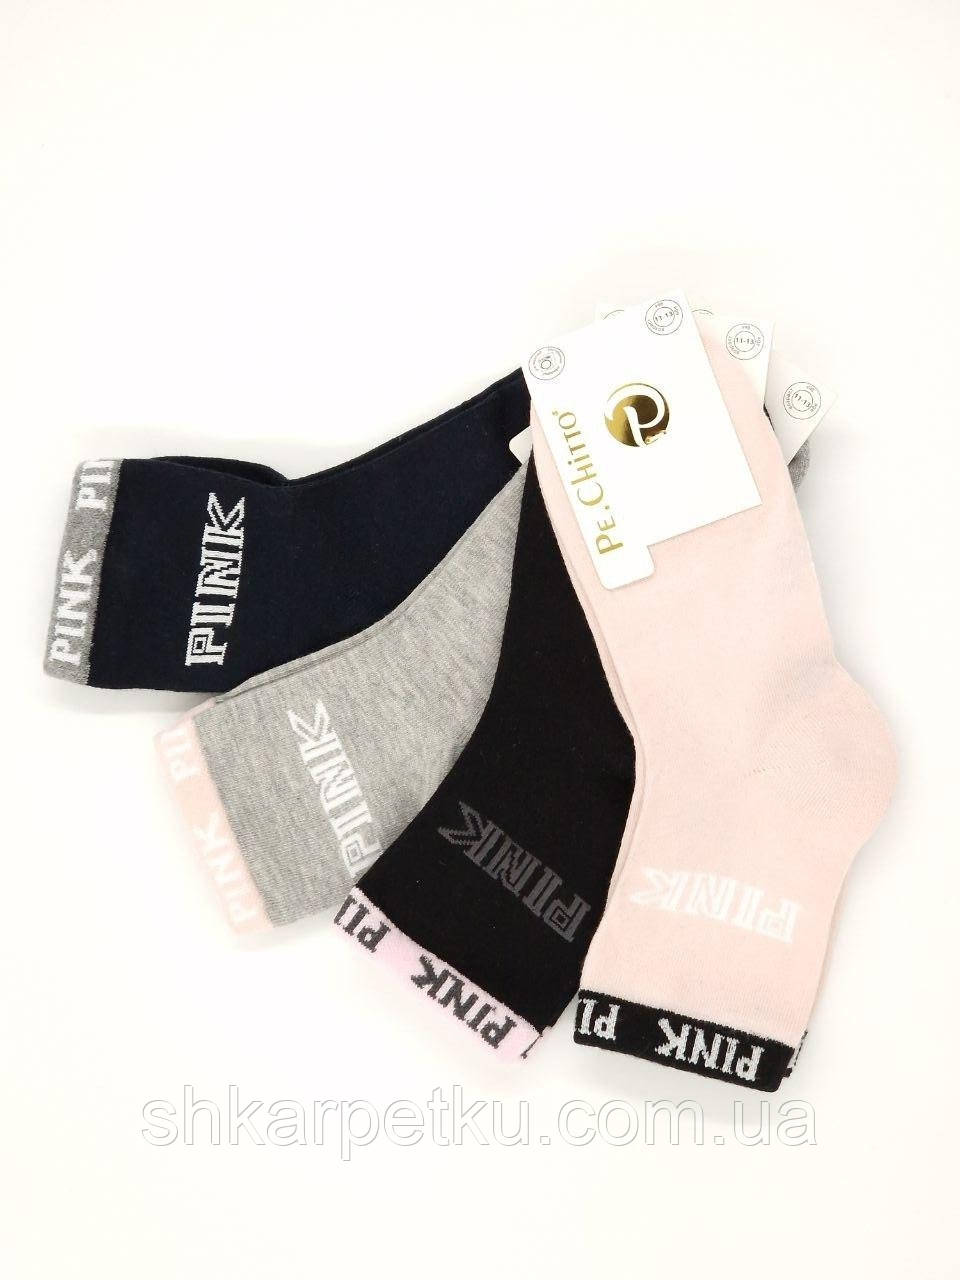 Дитячі шкарпетки Neco "Рink" для дівчаток 12 пар/уп мікс кольорів